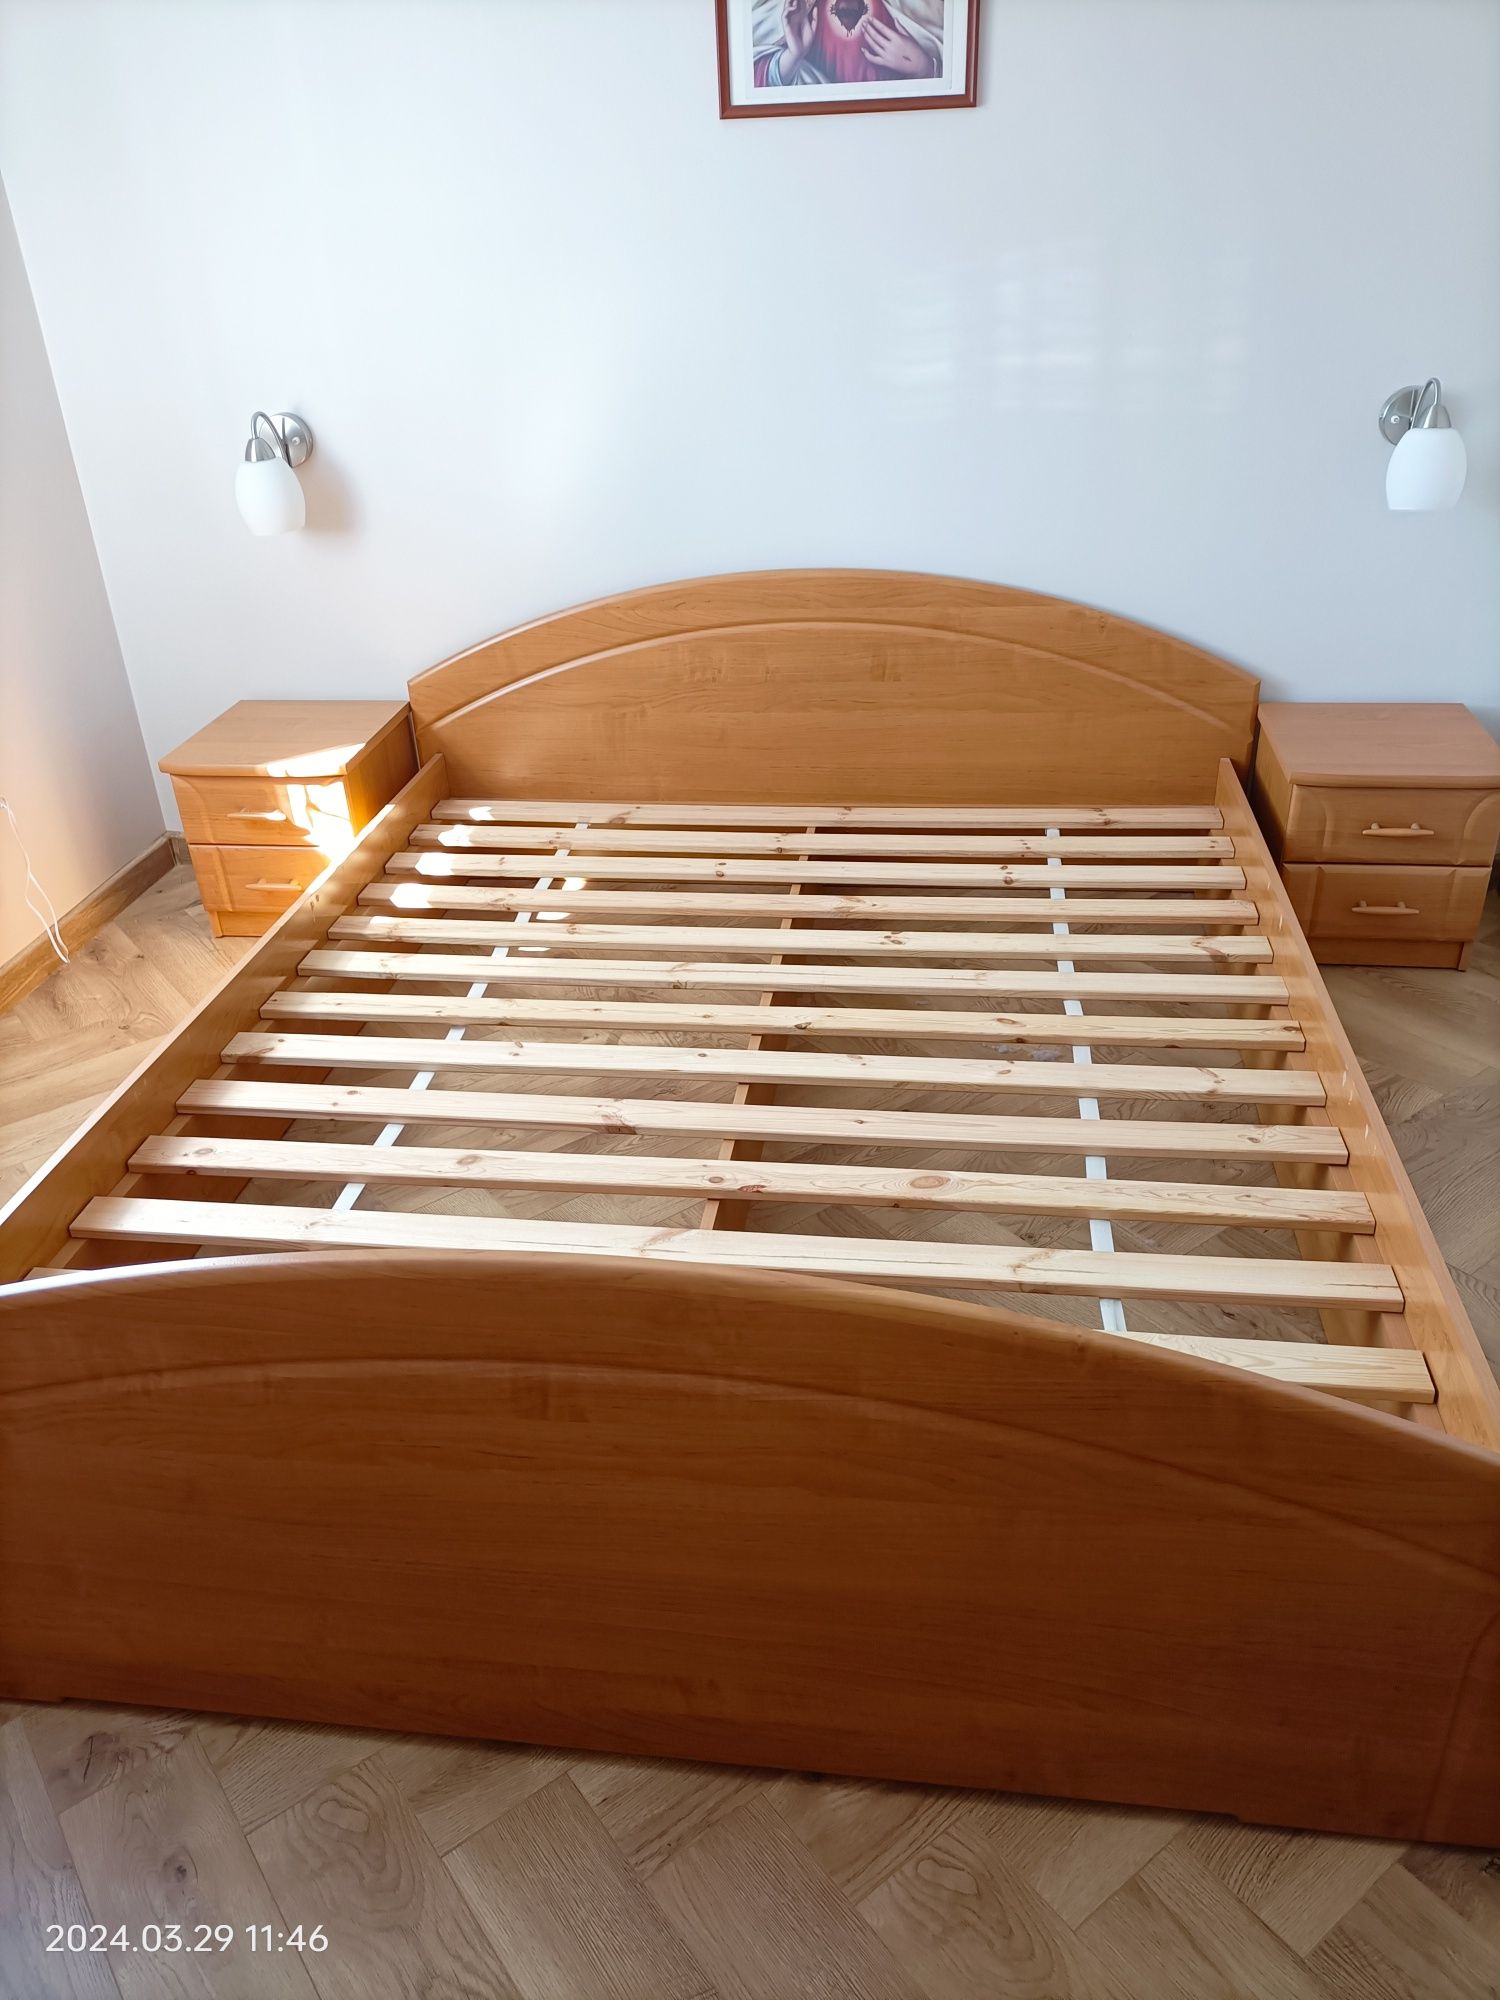 Łóżko MDF używane